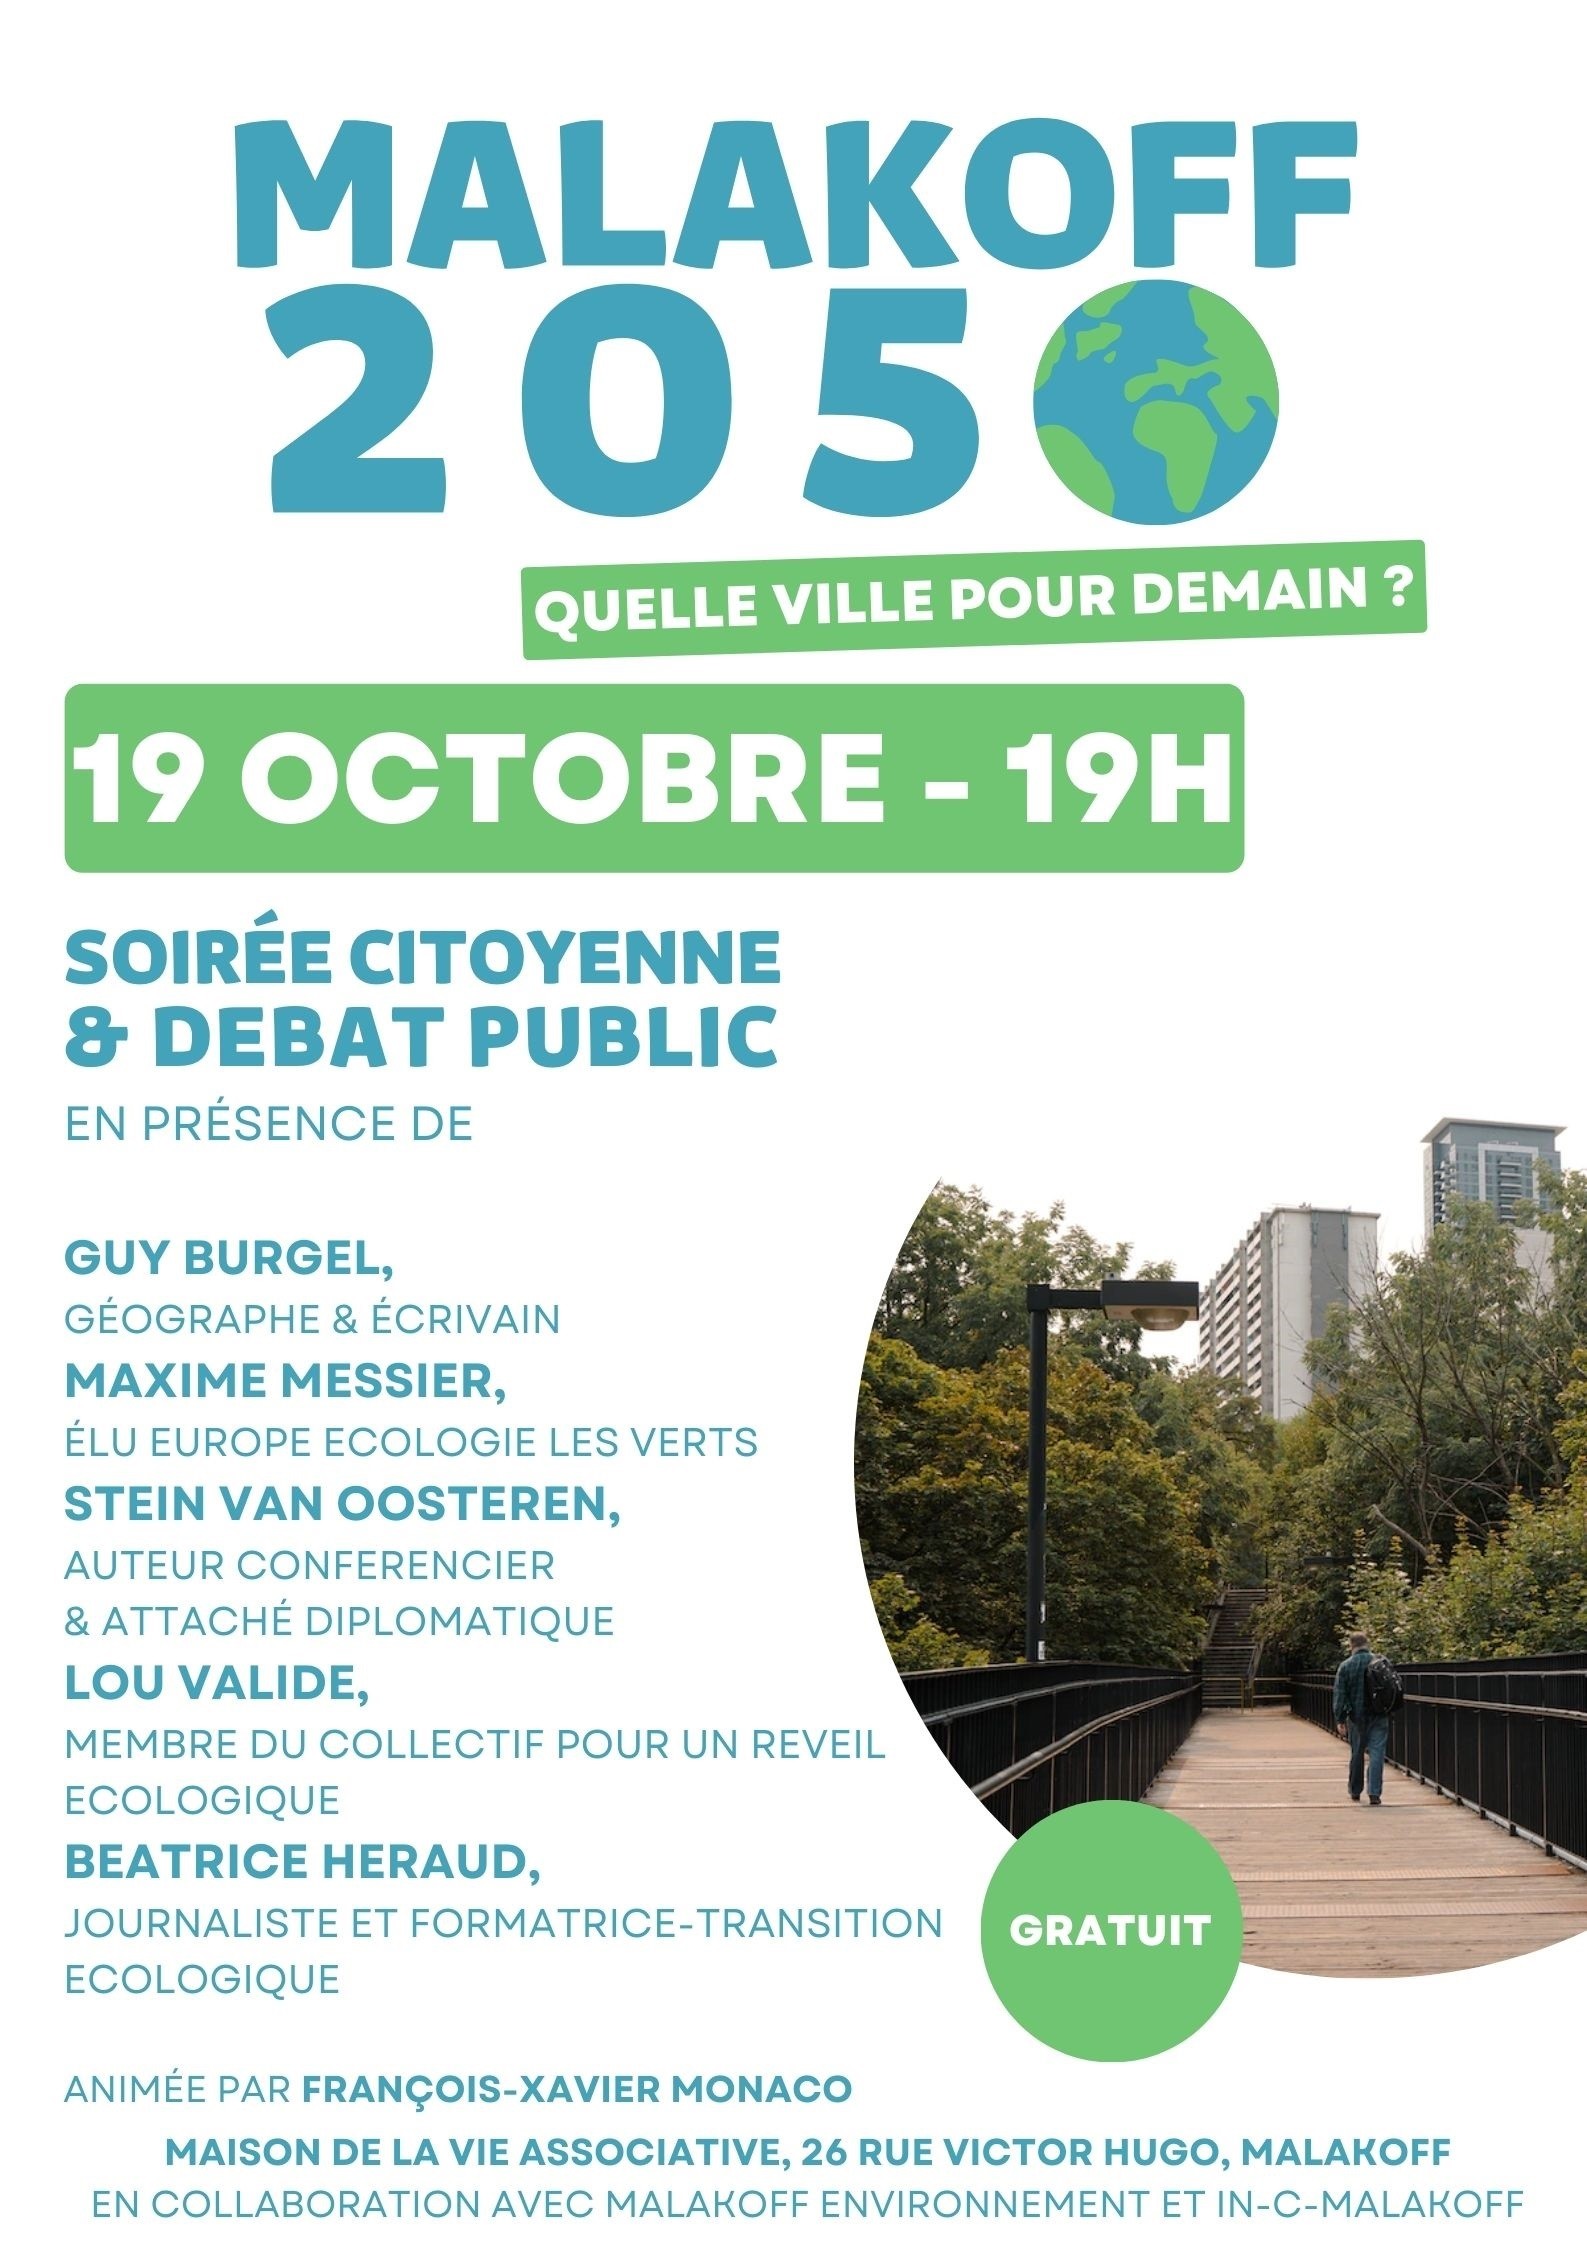 Réunion publique "Malakoff 2050 : quelle ville pour demain ?" le 19 octobre à 19h00.